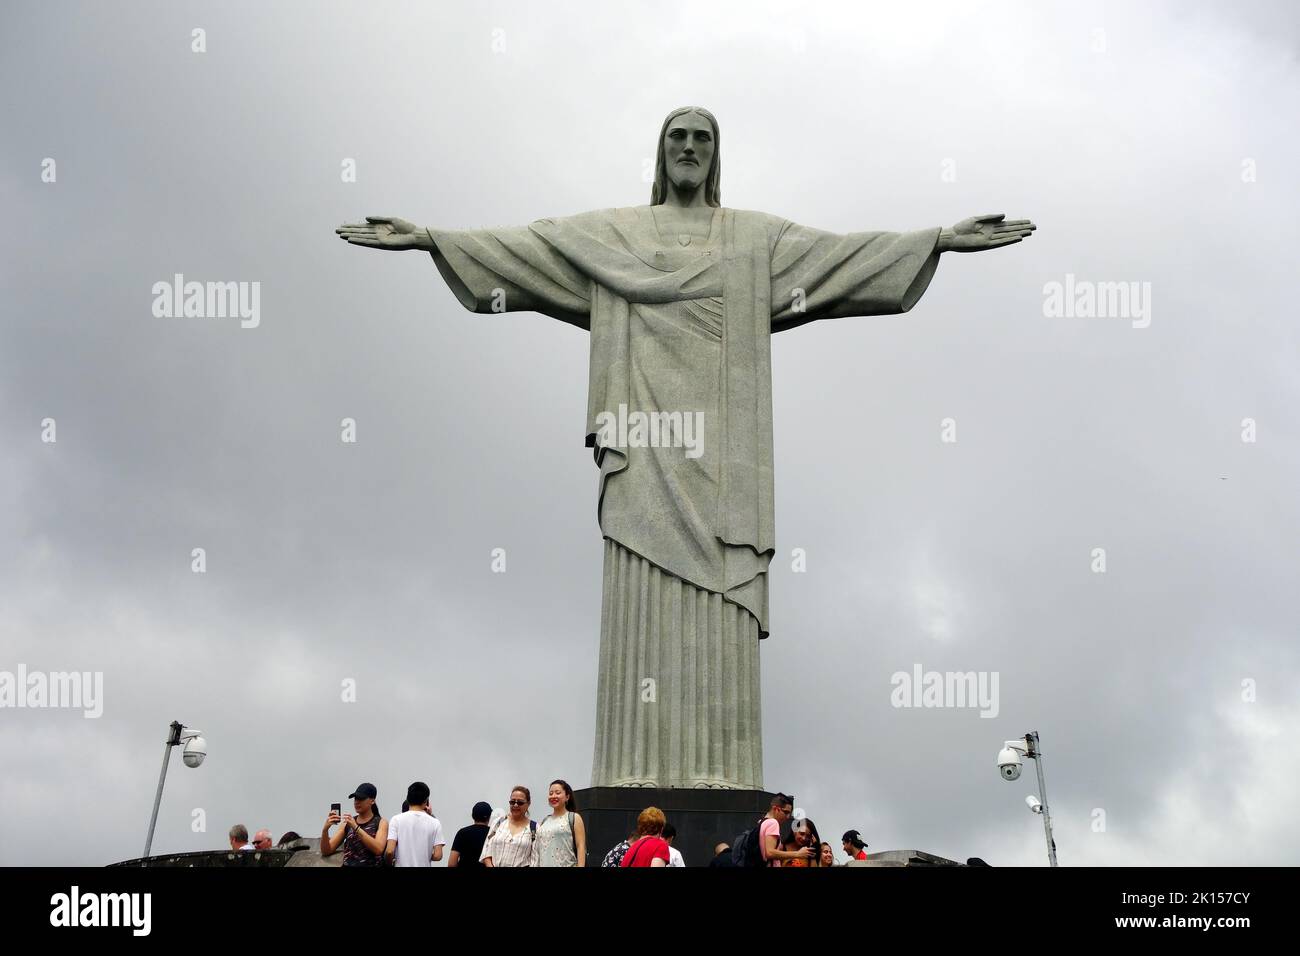 Rio de Janeiro, Southeast Region, Brazil, South America Stock Photo